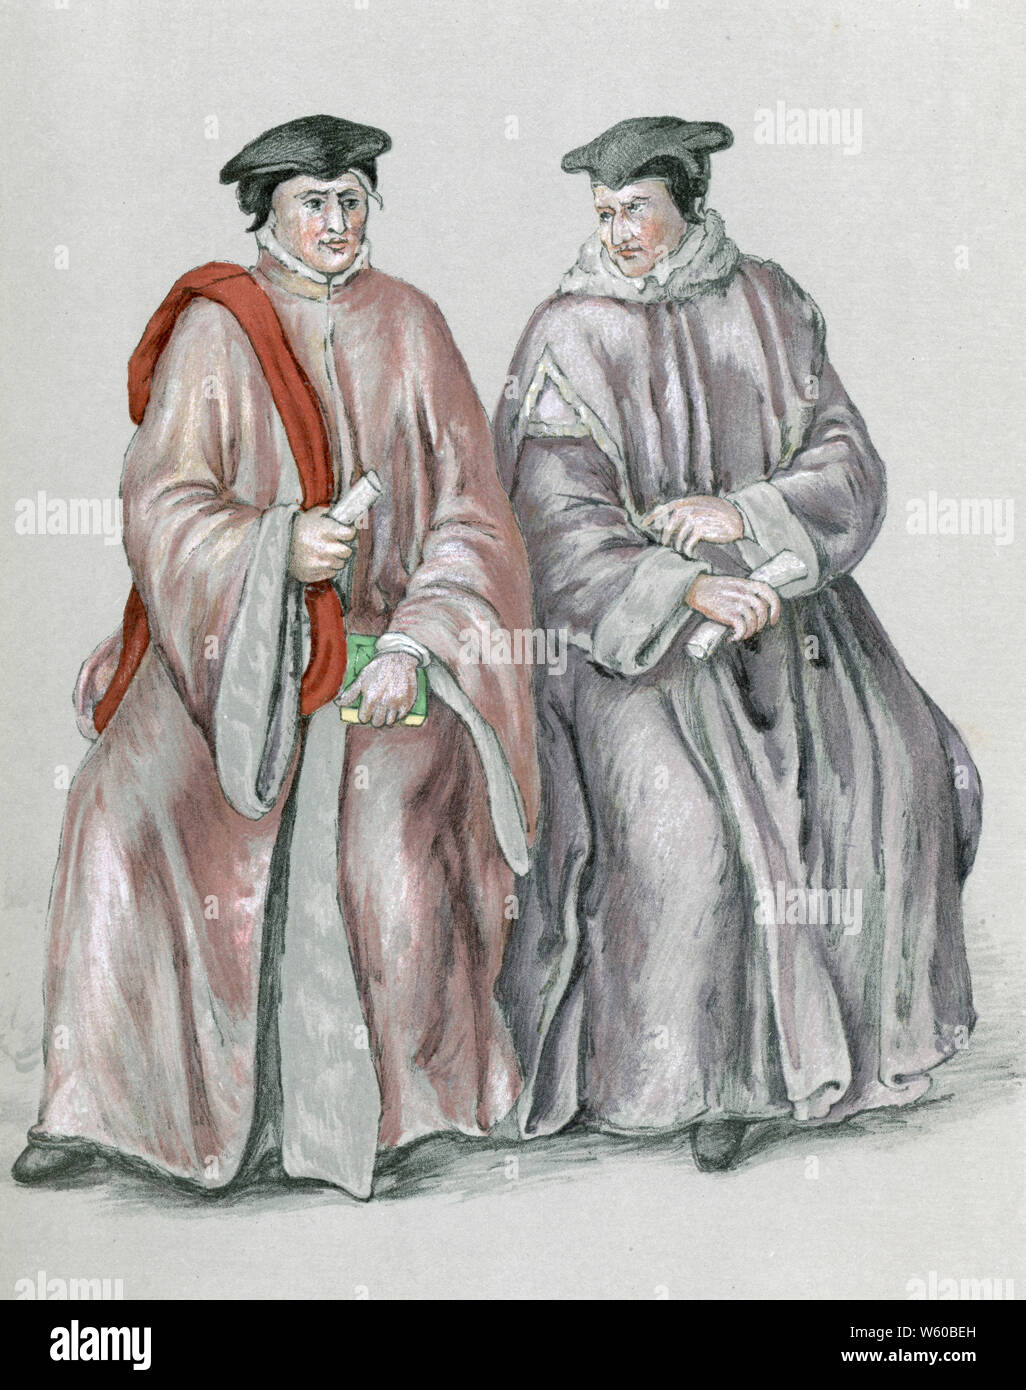 Juges Elizabethan dans leurs robes, cXVIe siècle. Juges à l'époque d'Elizabeth I. Banque D'Images